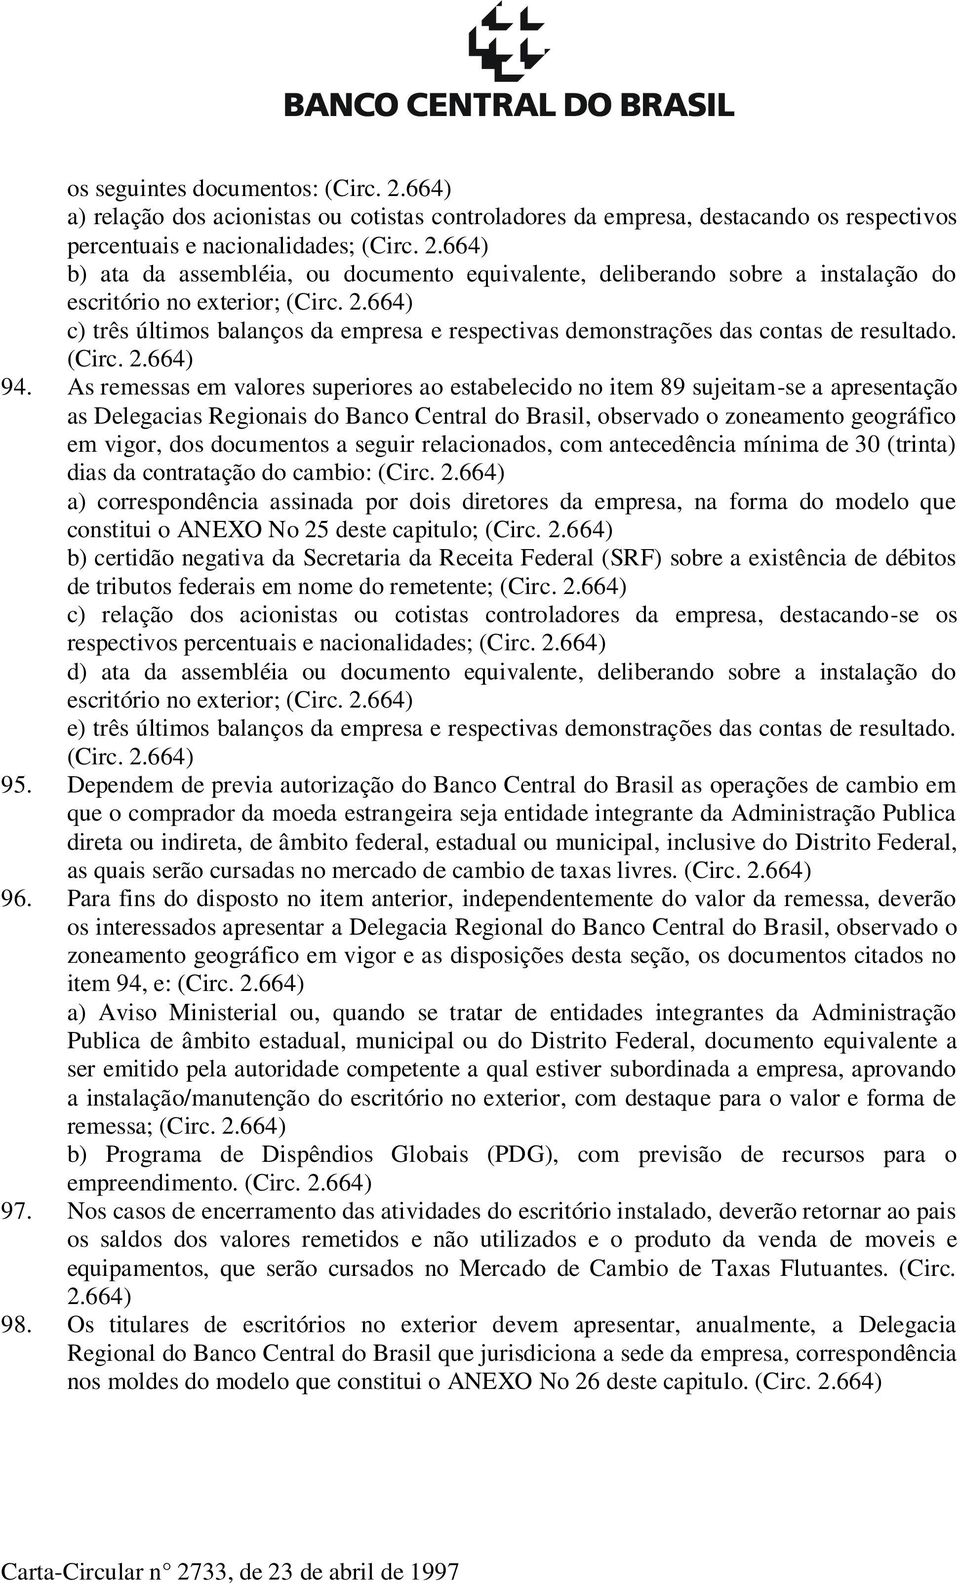 As remessas em valores superiores ao estabelecido no item 89 sujeitam-se a apresentação as Delegacias Regionais do Banco Central do Brasil, observado o zoneamento geográfico em vigor, dos documentos